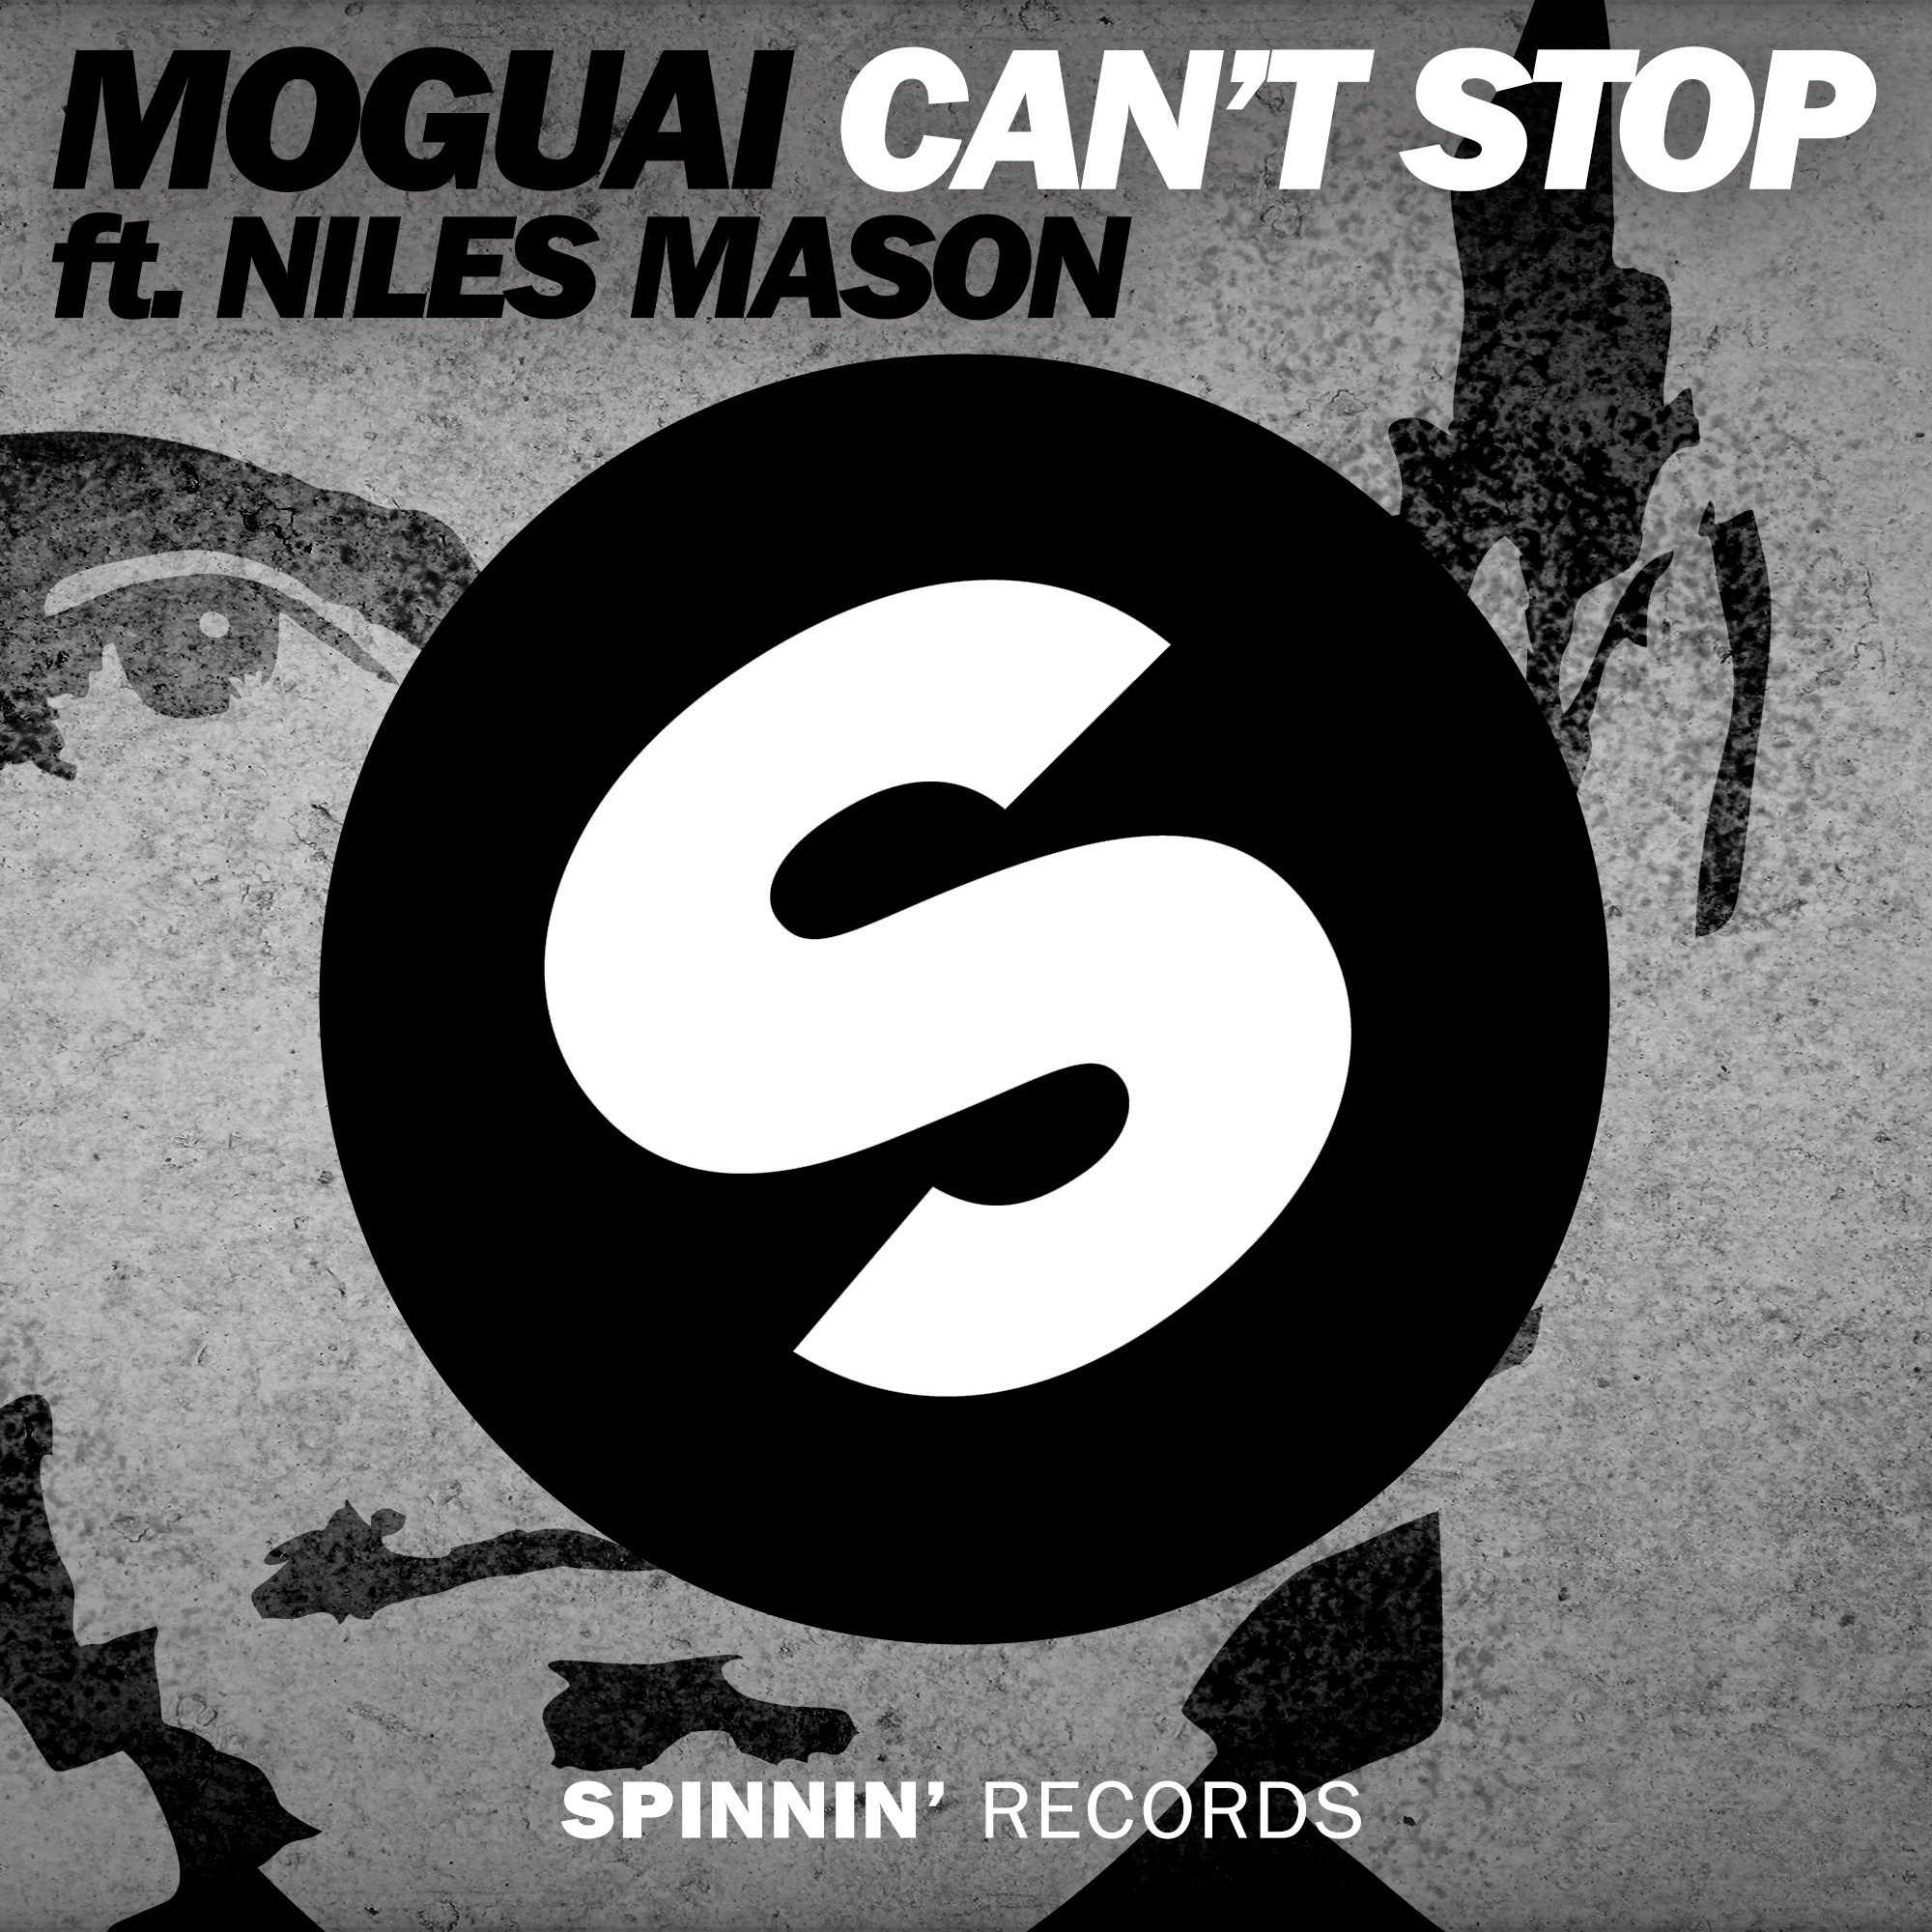 Can't Stop (Original Mix)